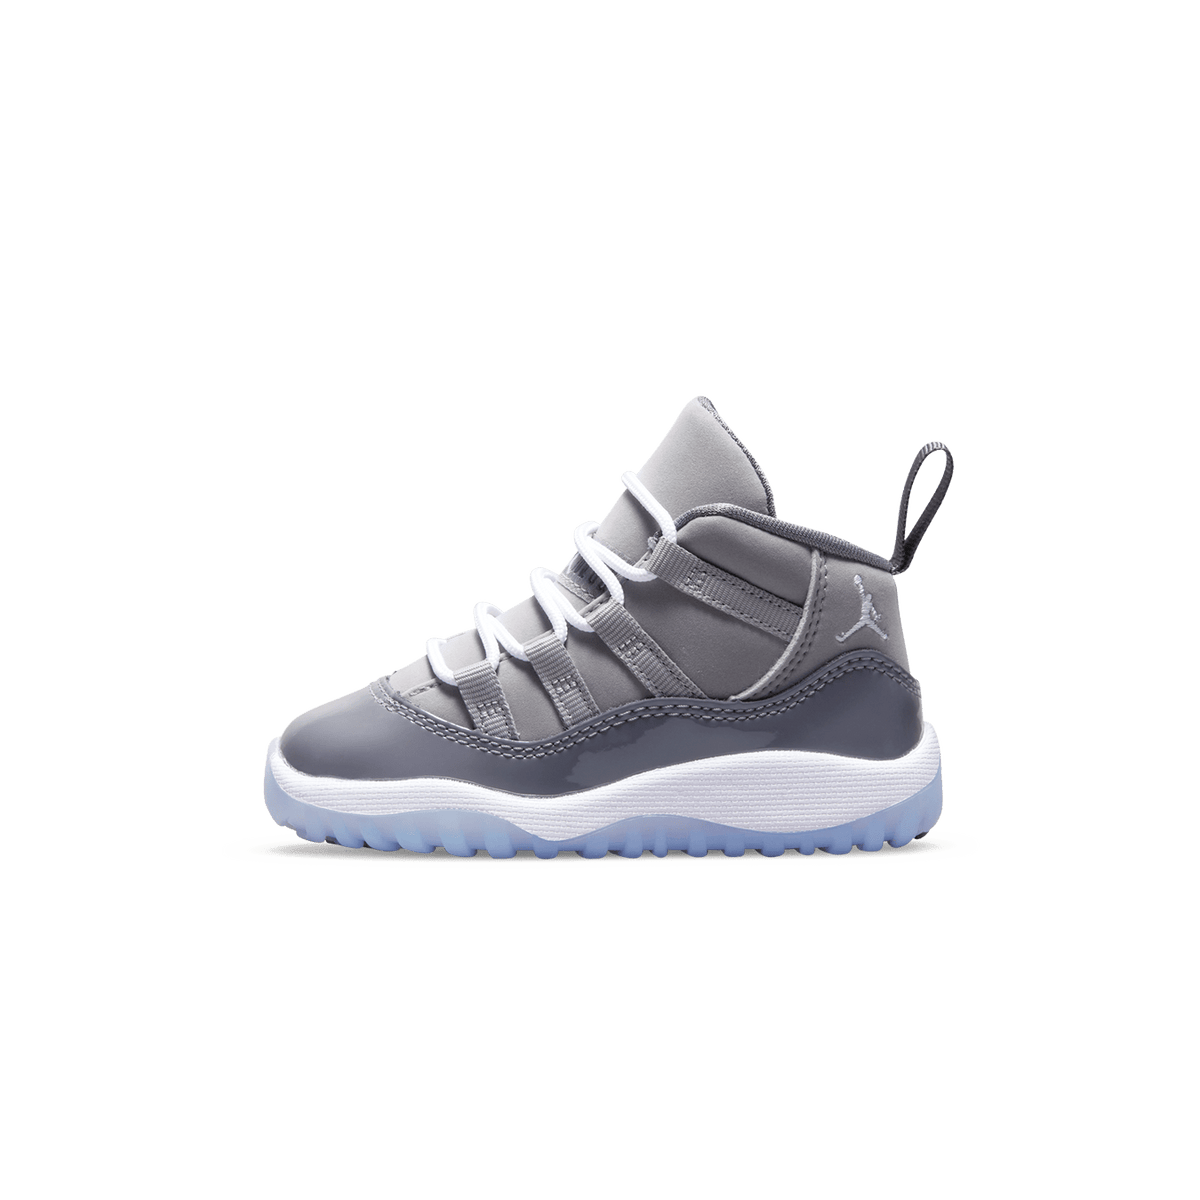 Air Jordan 11 Retro TD 'Cool Grey' 2021 - Kick Game